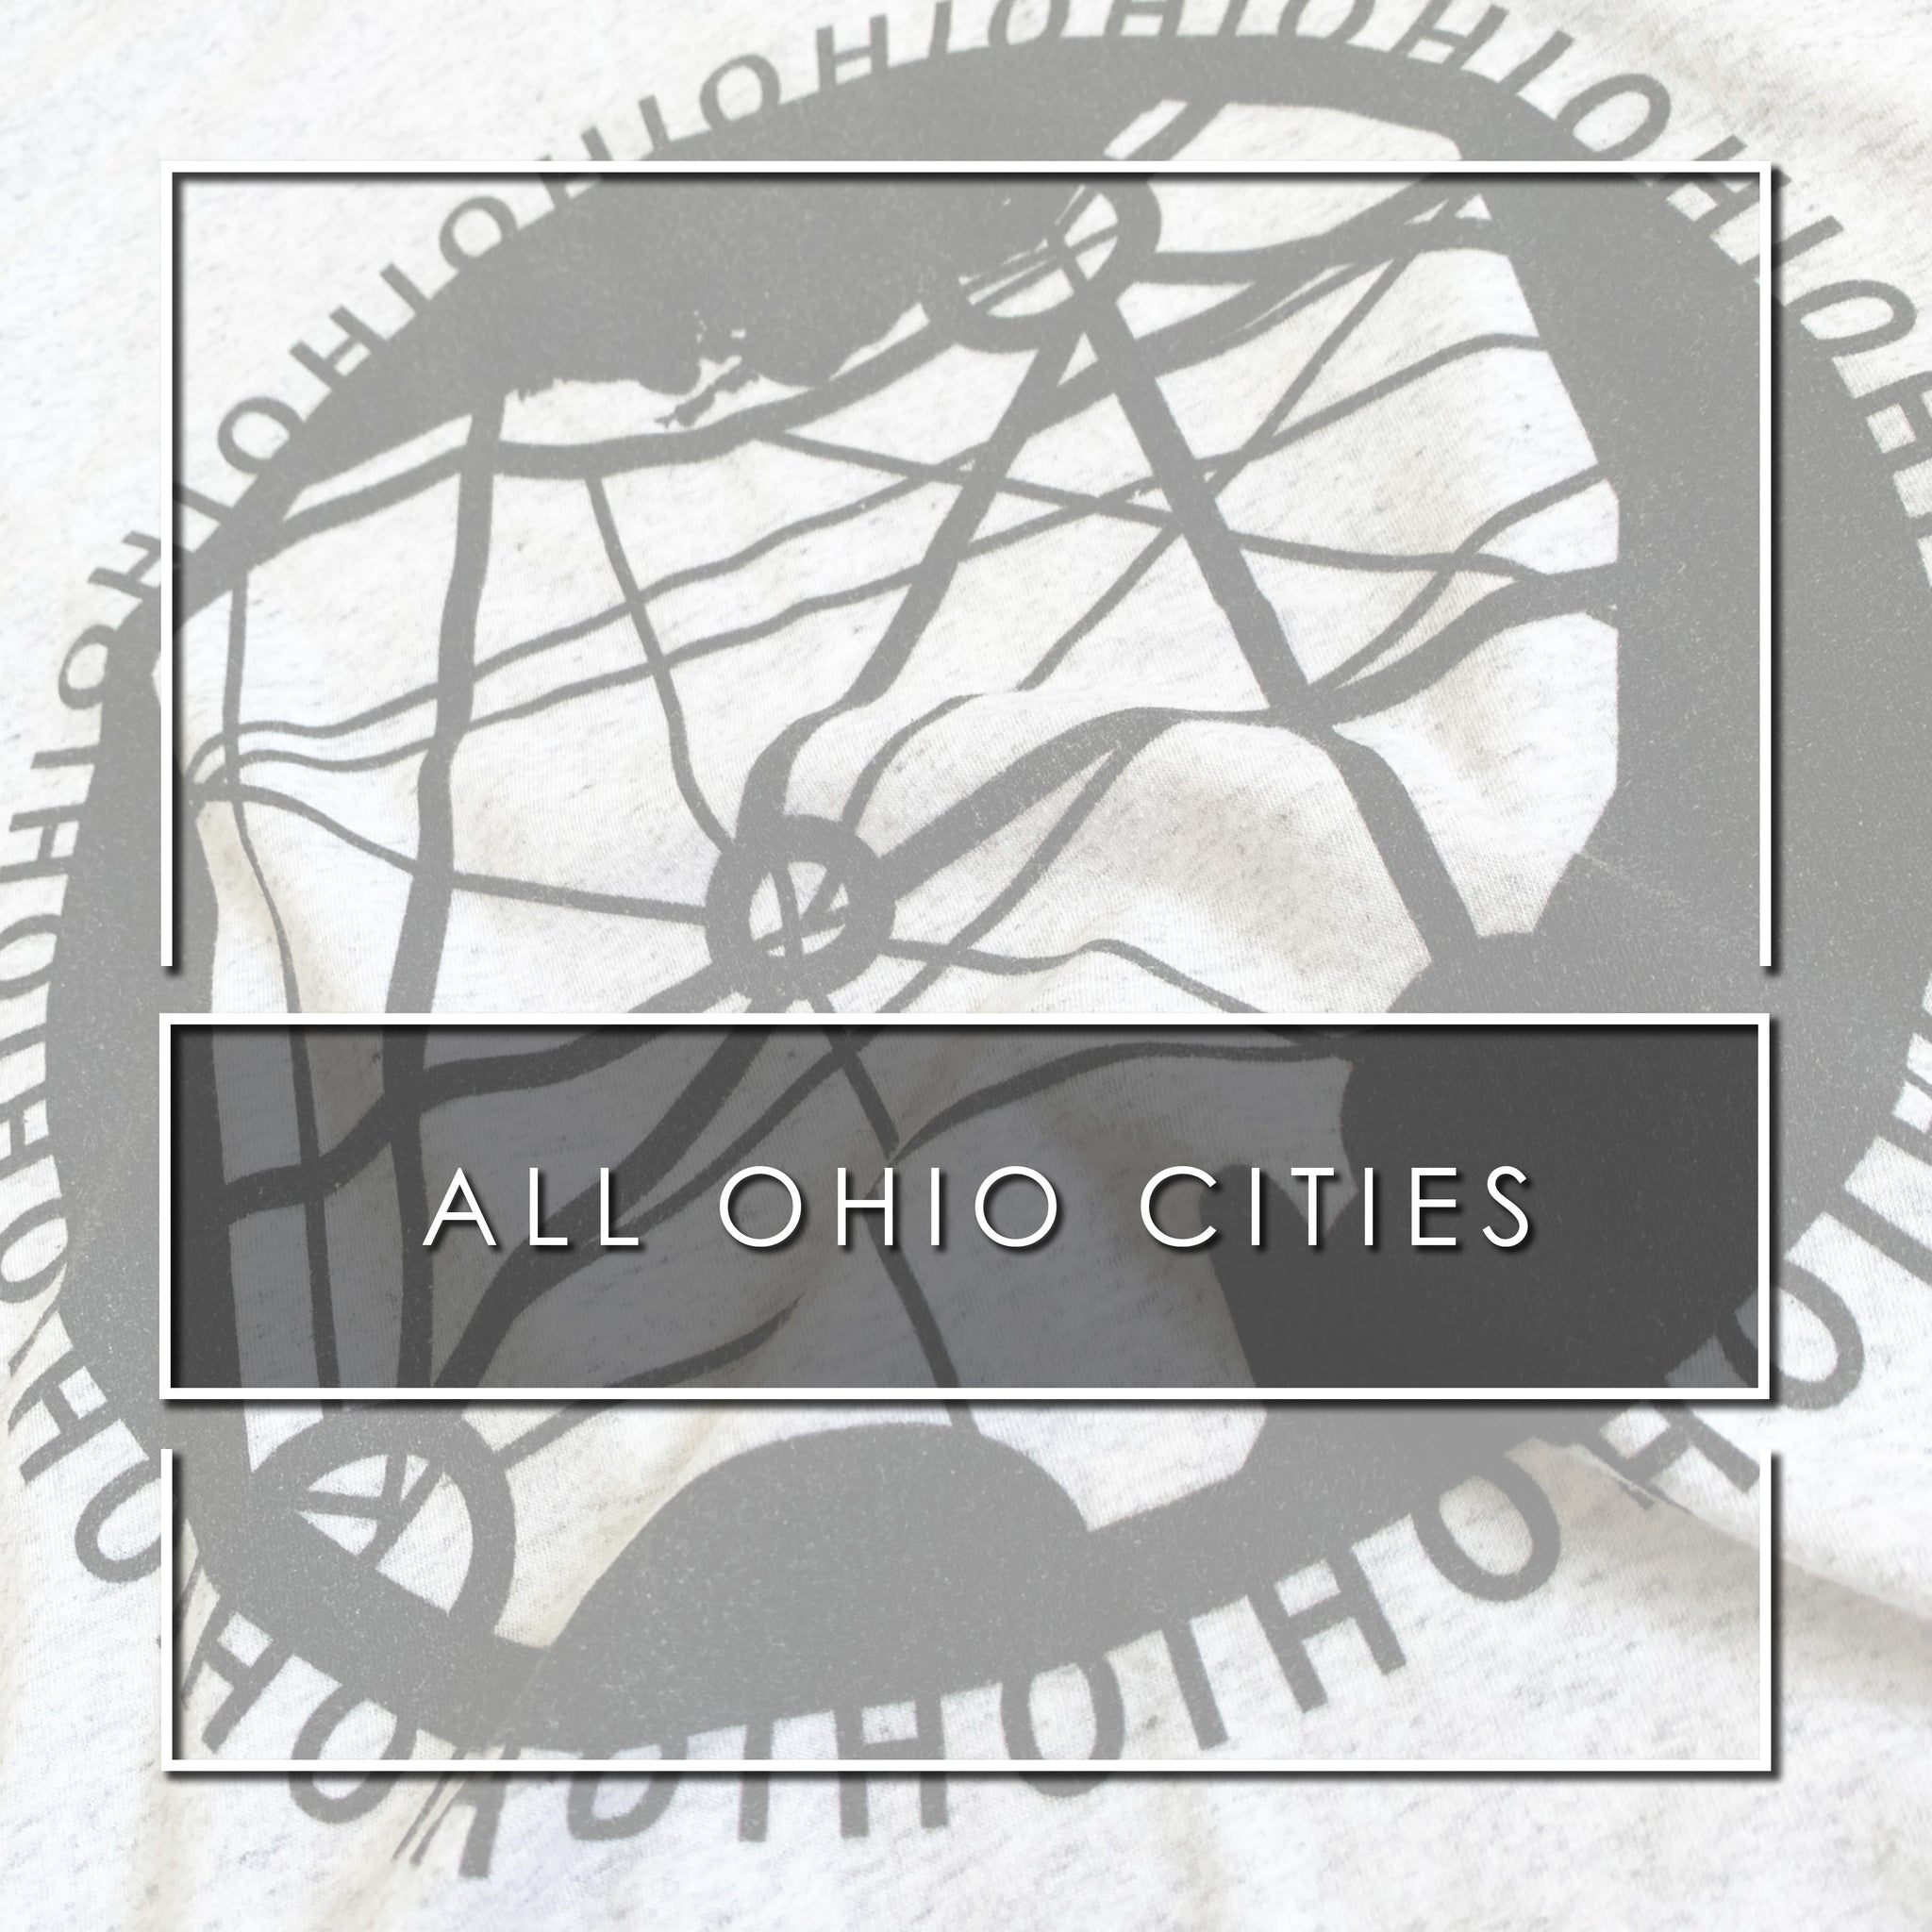 All Ohio Cities